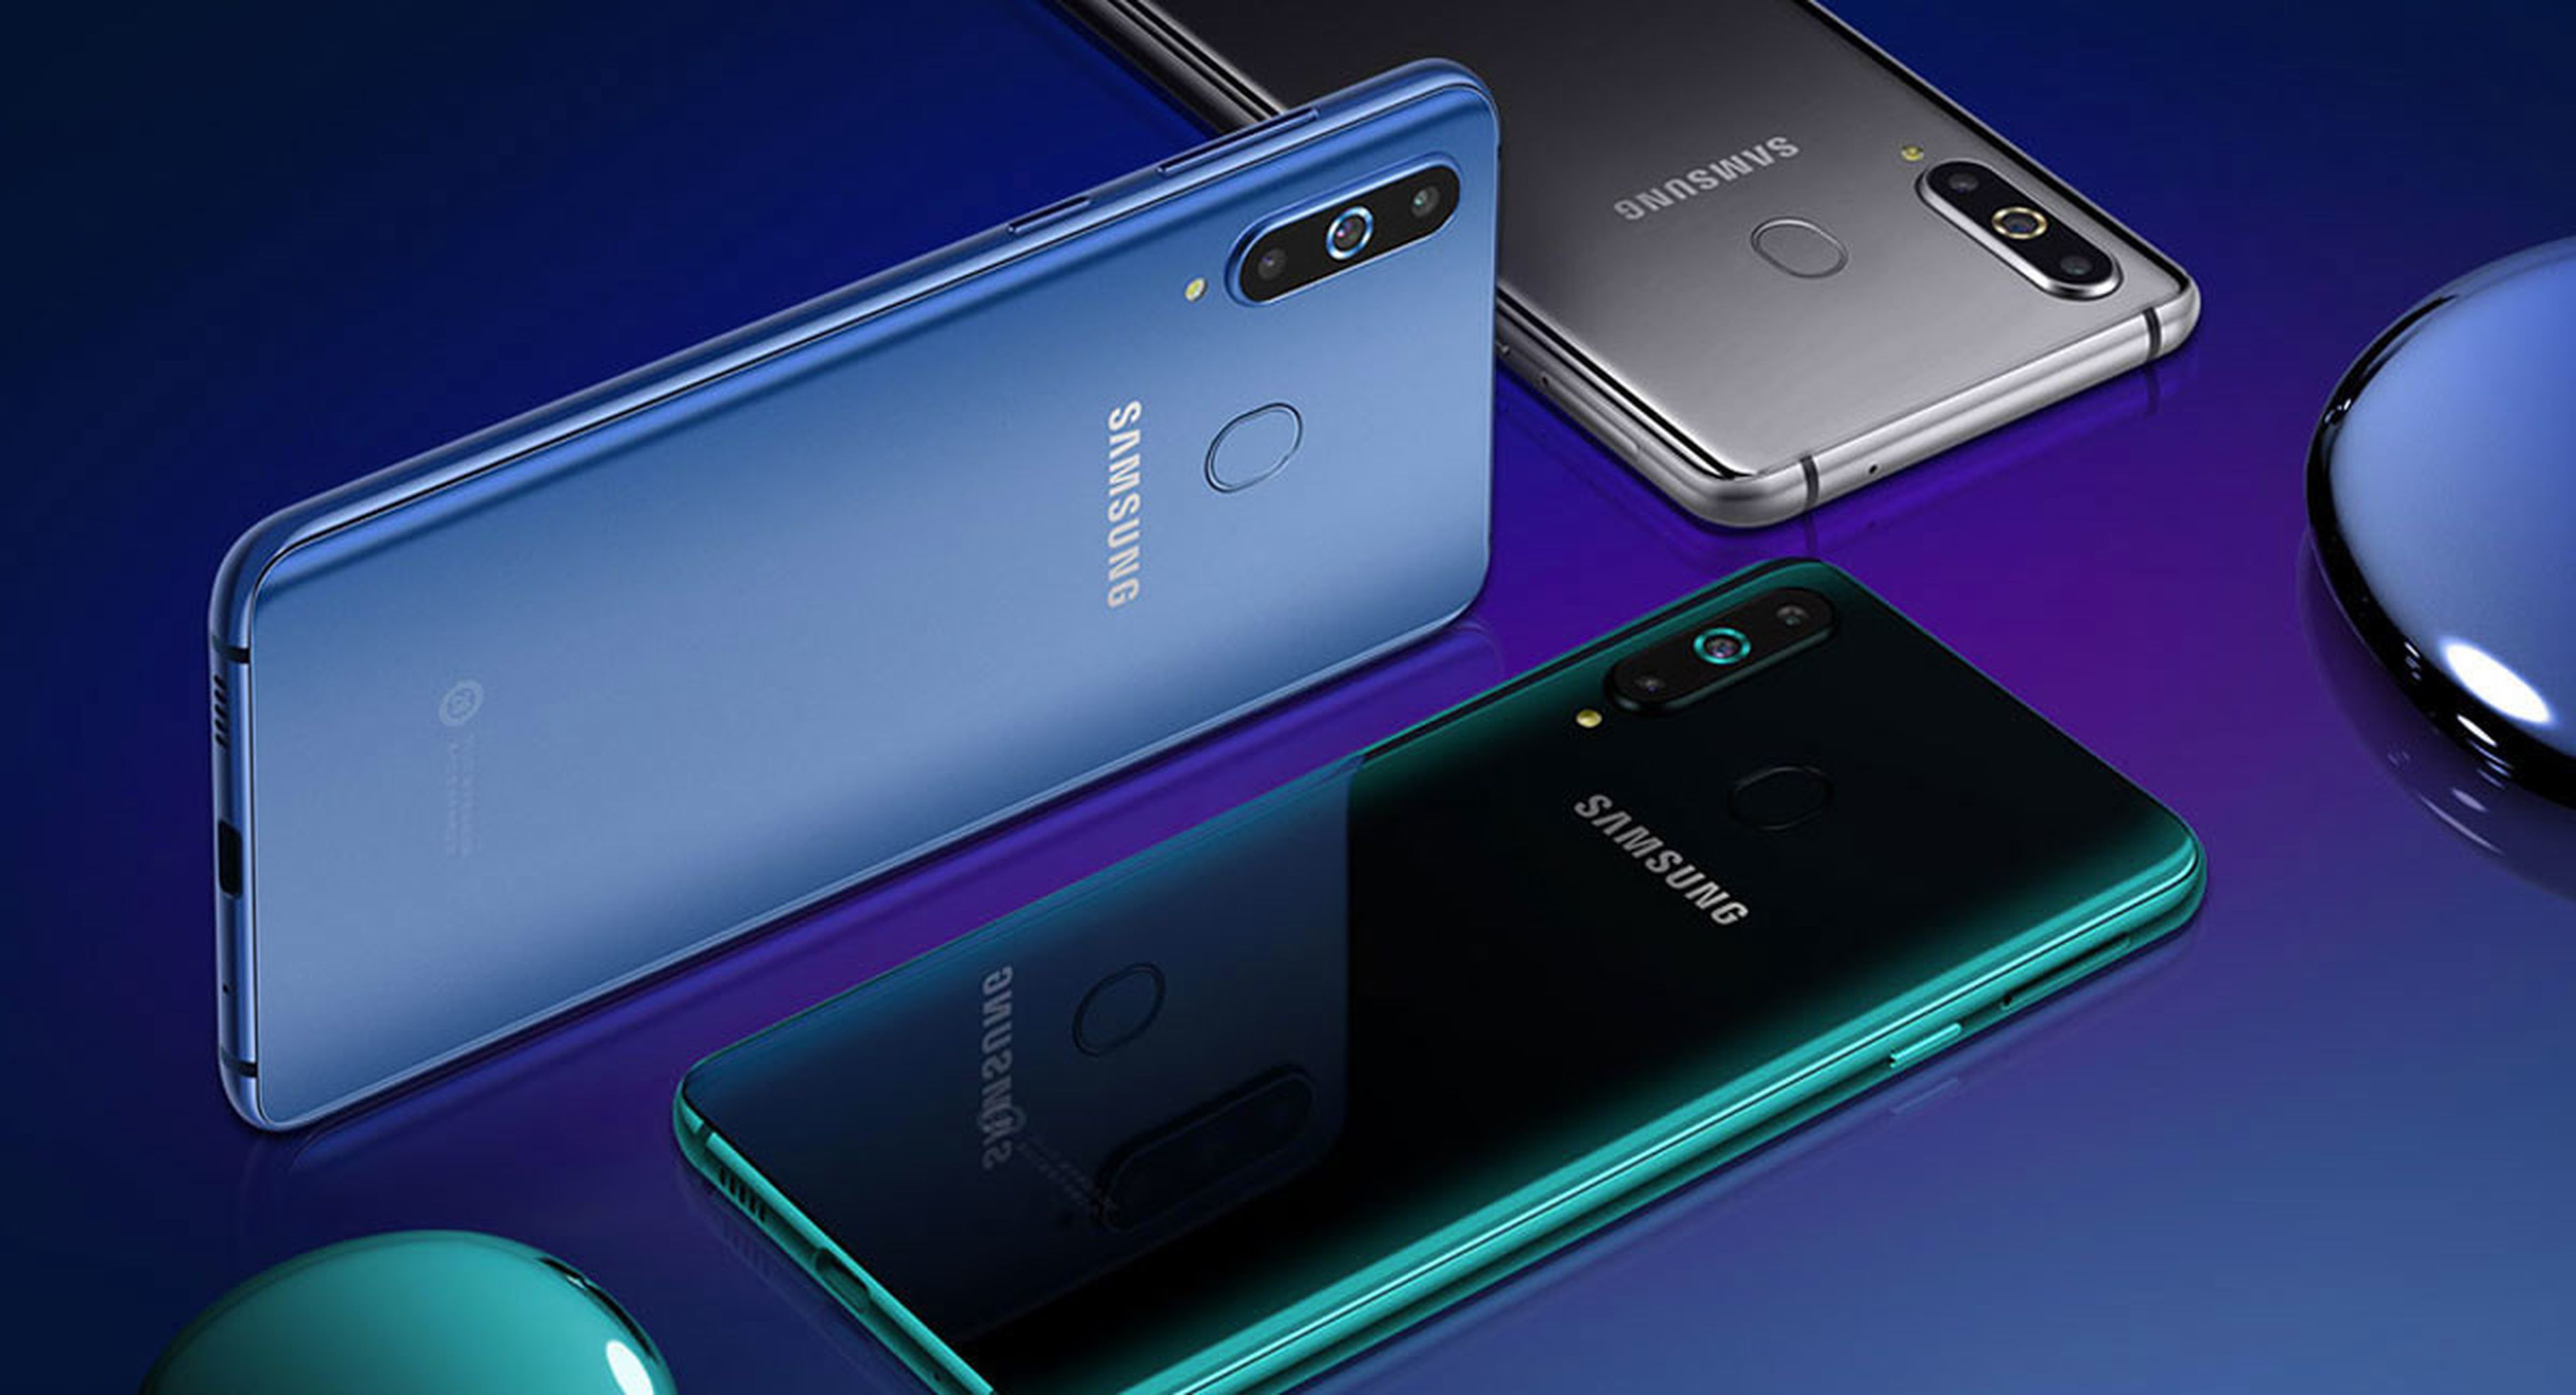 Samsung Galaxy A9 (2019)